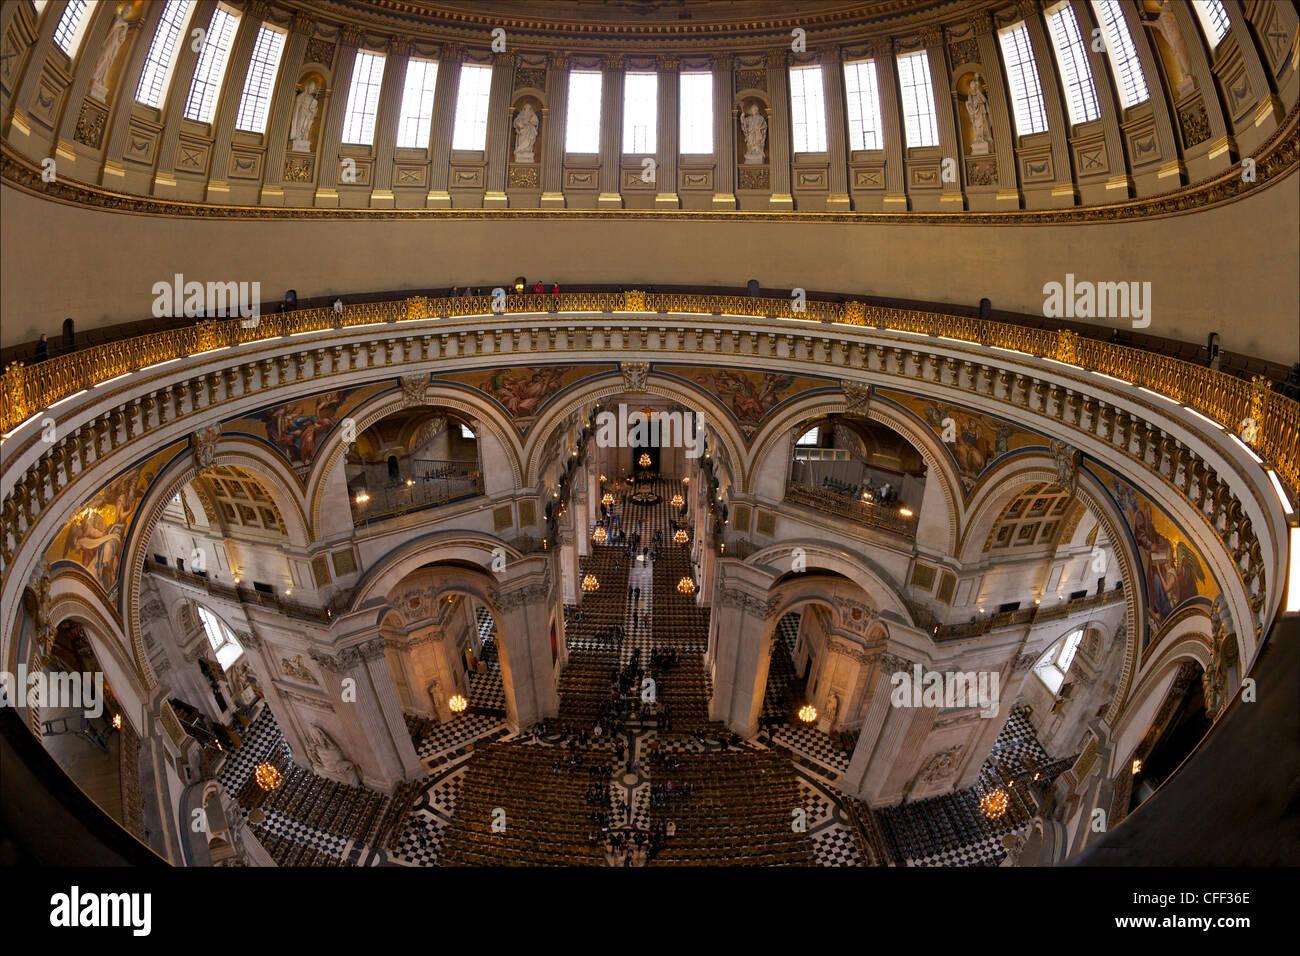 Whispering Gallery et la nef, intérieur de la Cathédrale St Paul, Londres, Angleterre, Royaume-Uni, Europe Banque D'Images